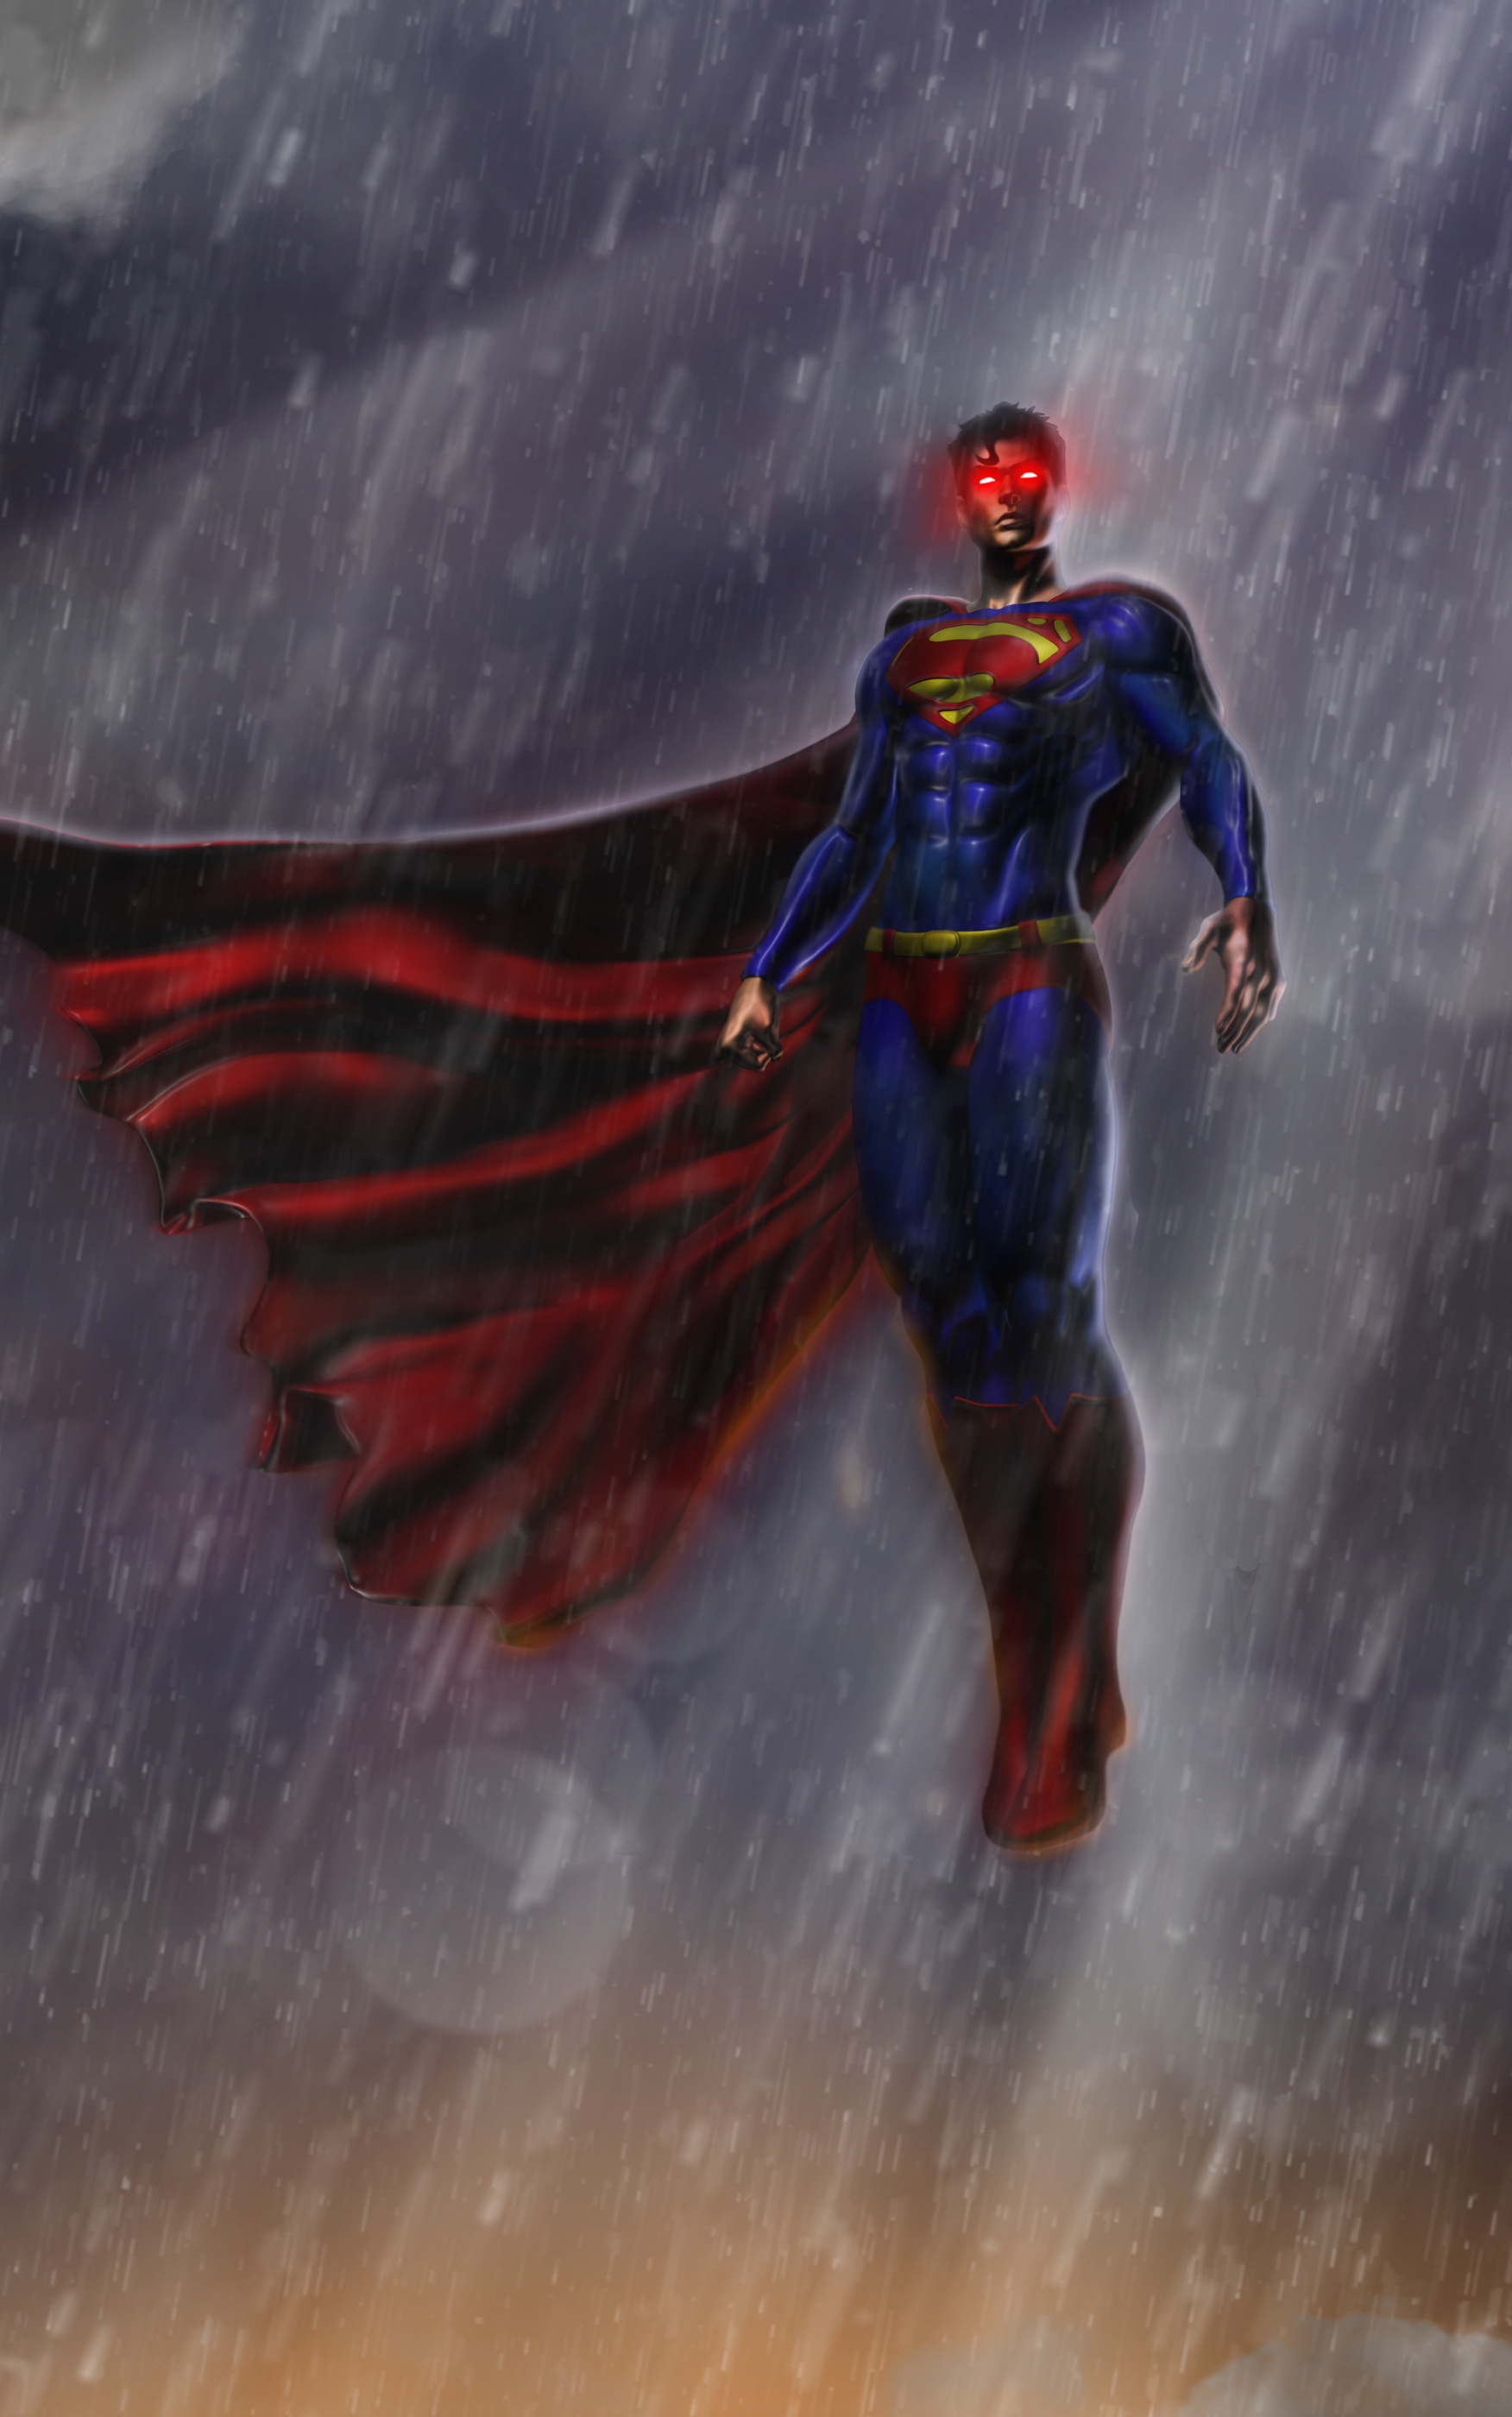 Скачать обои бесплатно Дождь, Комиксы, Супергерой, Супермен, Логотип Супермена картинка на рабочий стол ПК